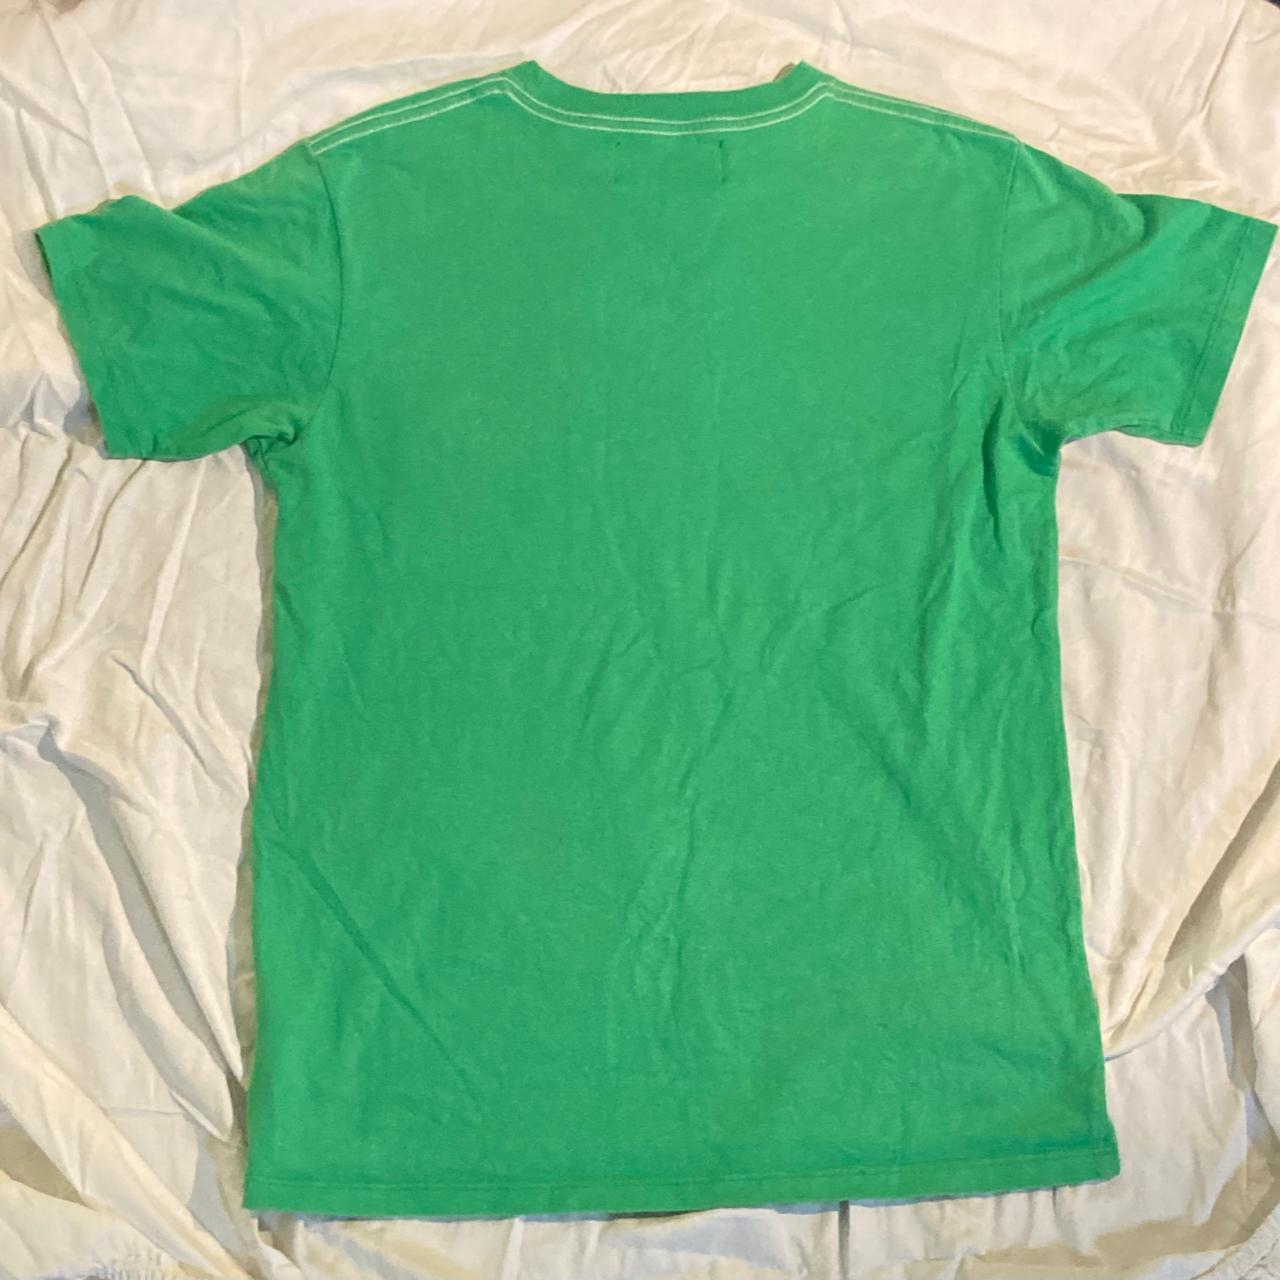 Bianca Chandon Men's Green T-shirt | Depop